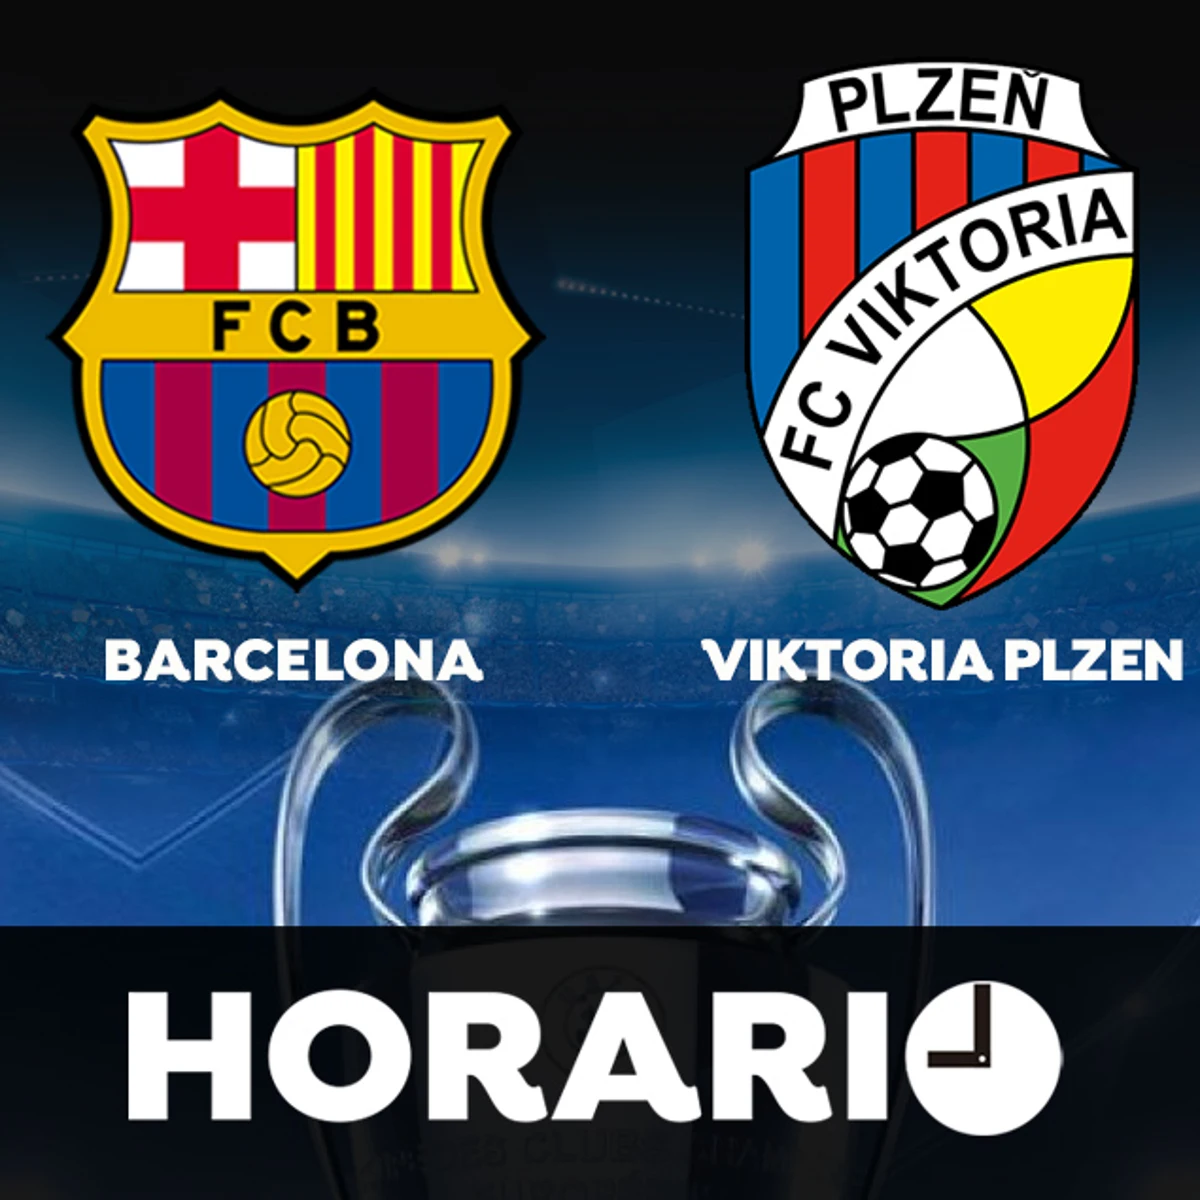 Barcelona - Horario y dónde ver el partido de Champions League en directo